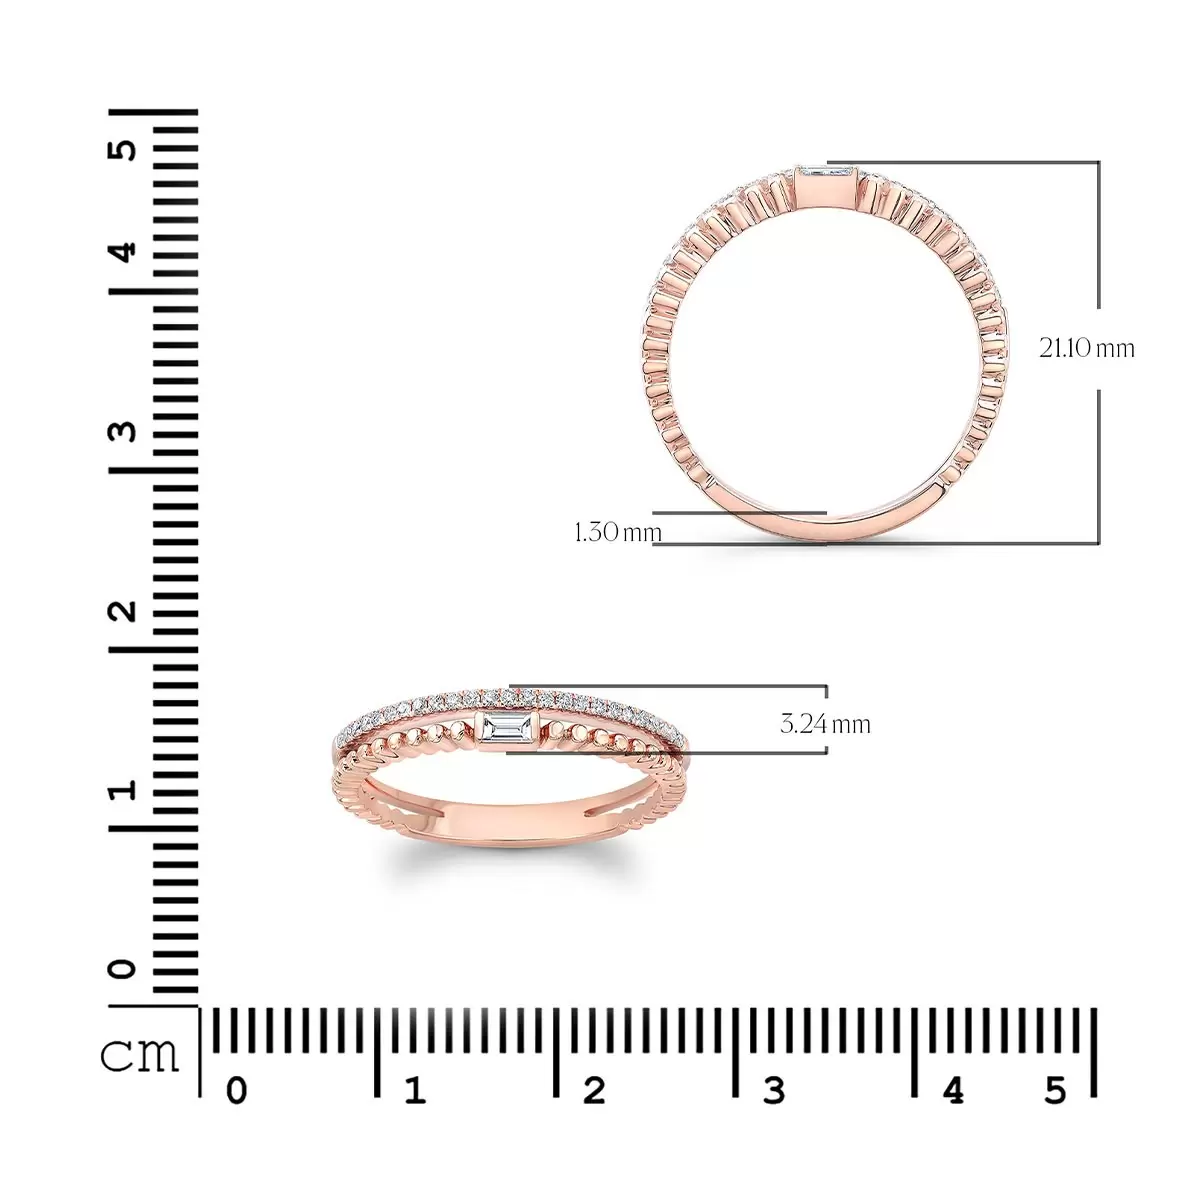 0.16克拉 18K玫瑰金 圓形長方梯形鑽石戒指 VS2/I 美規7號